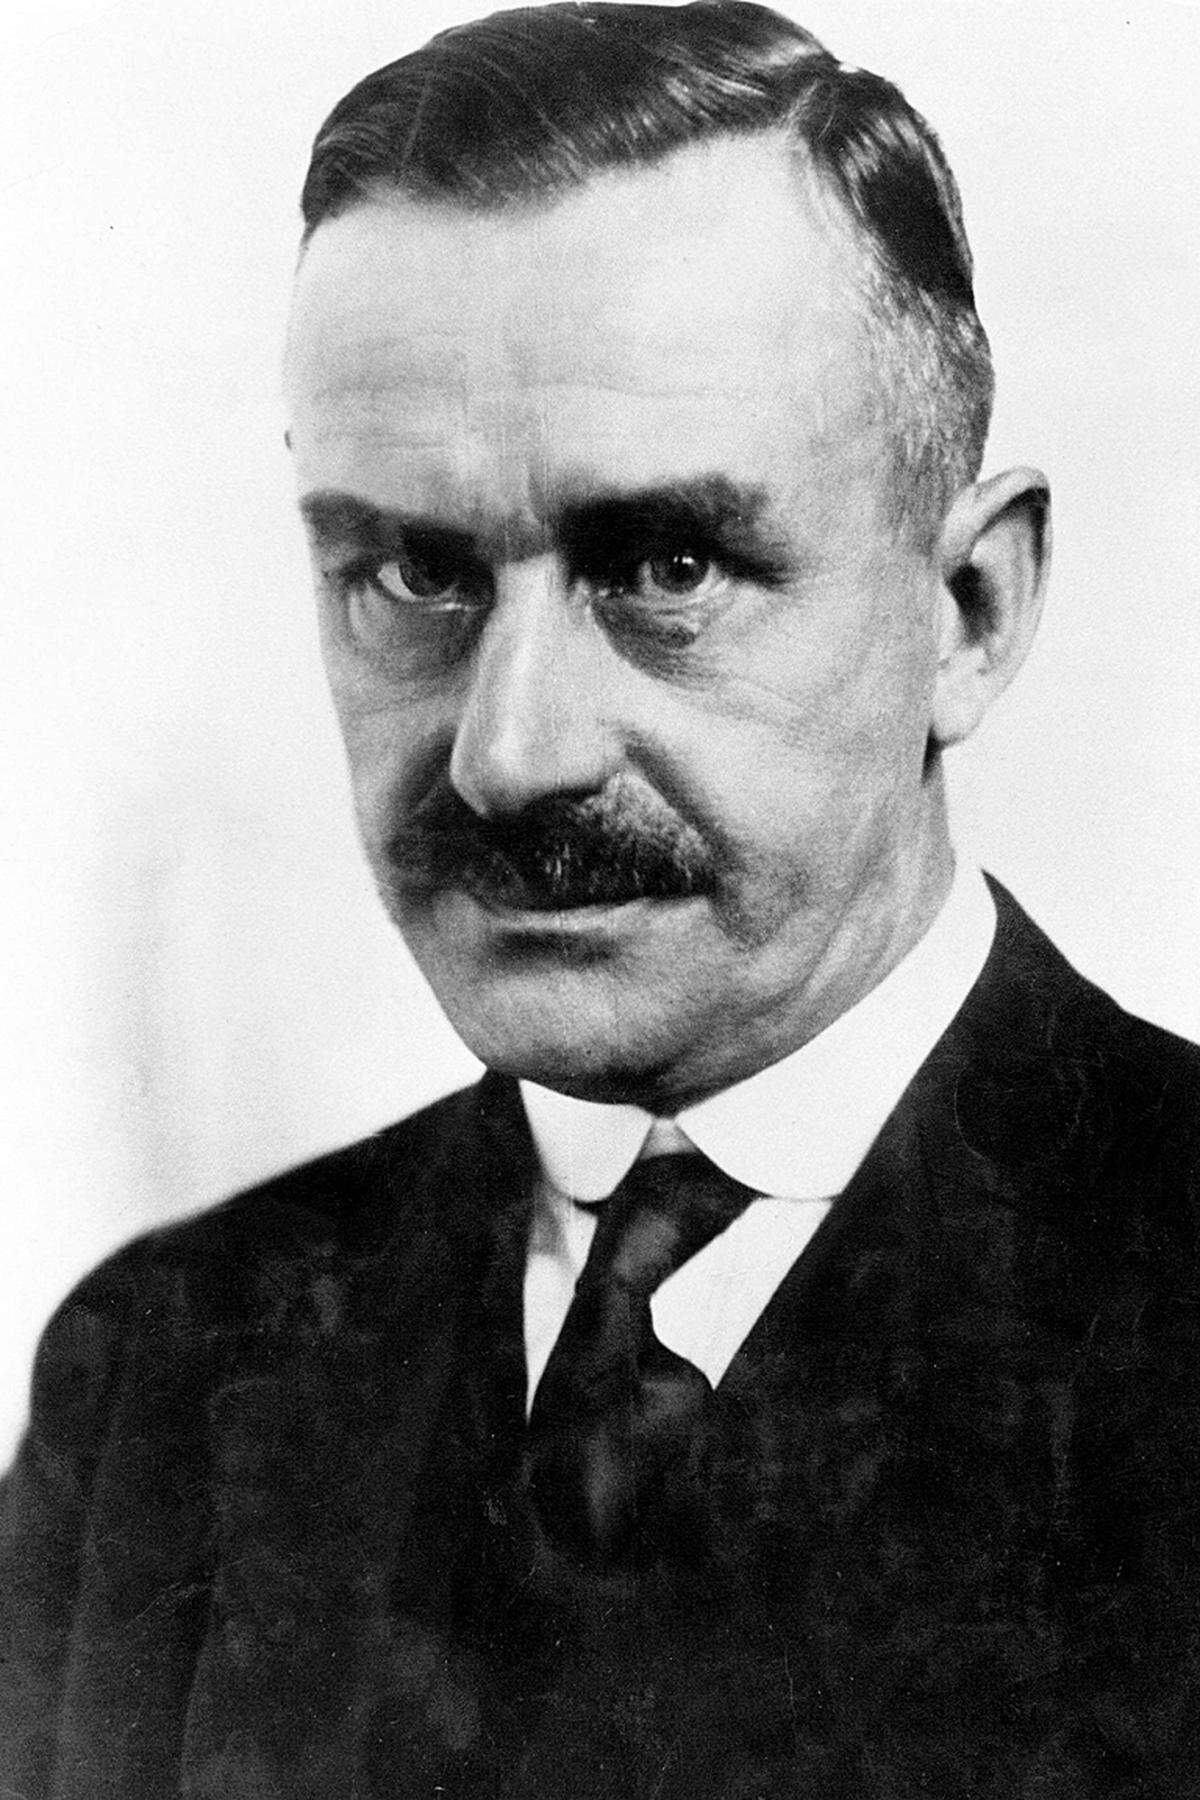 Thomas Mann (1875 - 1955), für seinen zu einem klassischen Werk zeitgenössischer Literatur gewordenen großen Roman "Buddenbrooks".